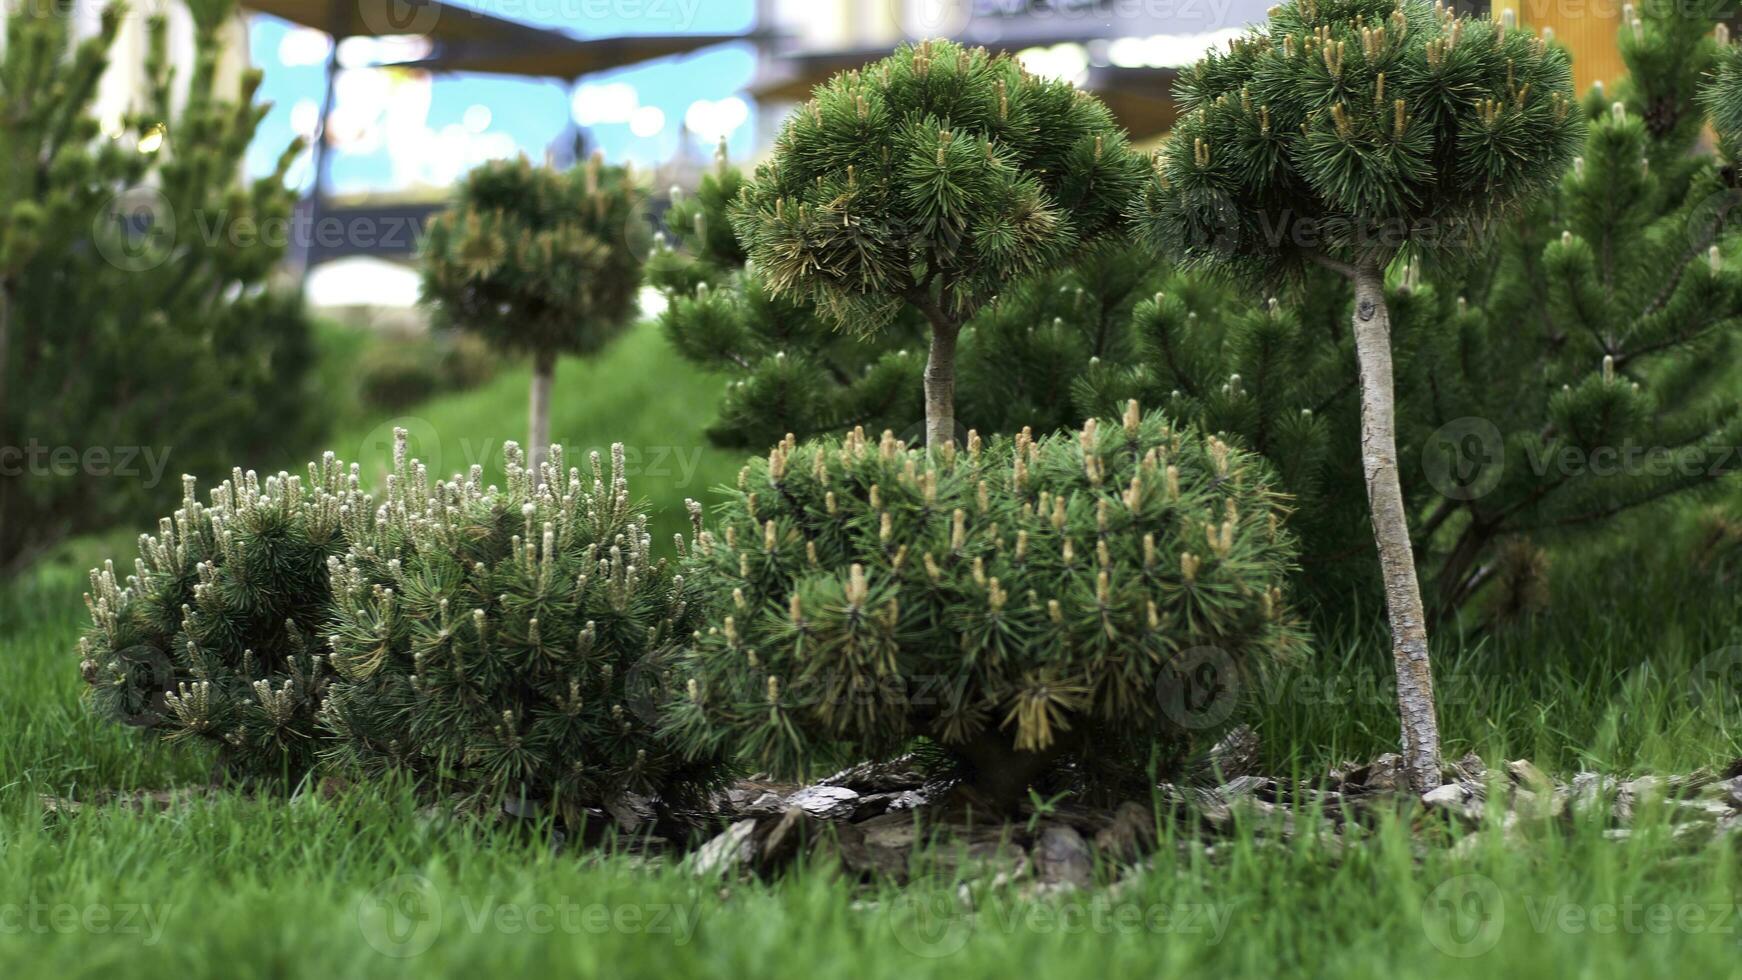 gazon struiken groeit in de stad park, beheer van de gebied concept. voorraad filmmateriaal. groen klein naald- struiken en helder vers gras. foto